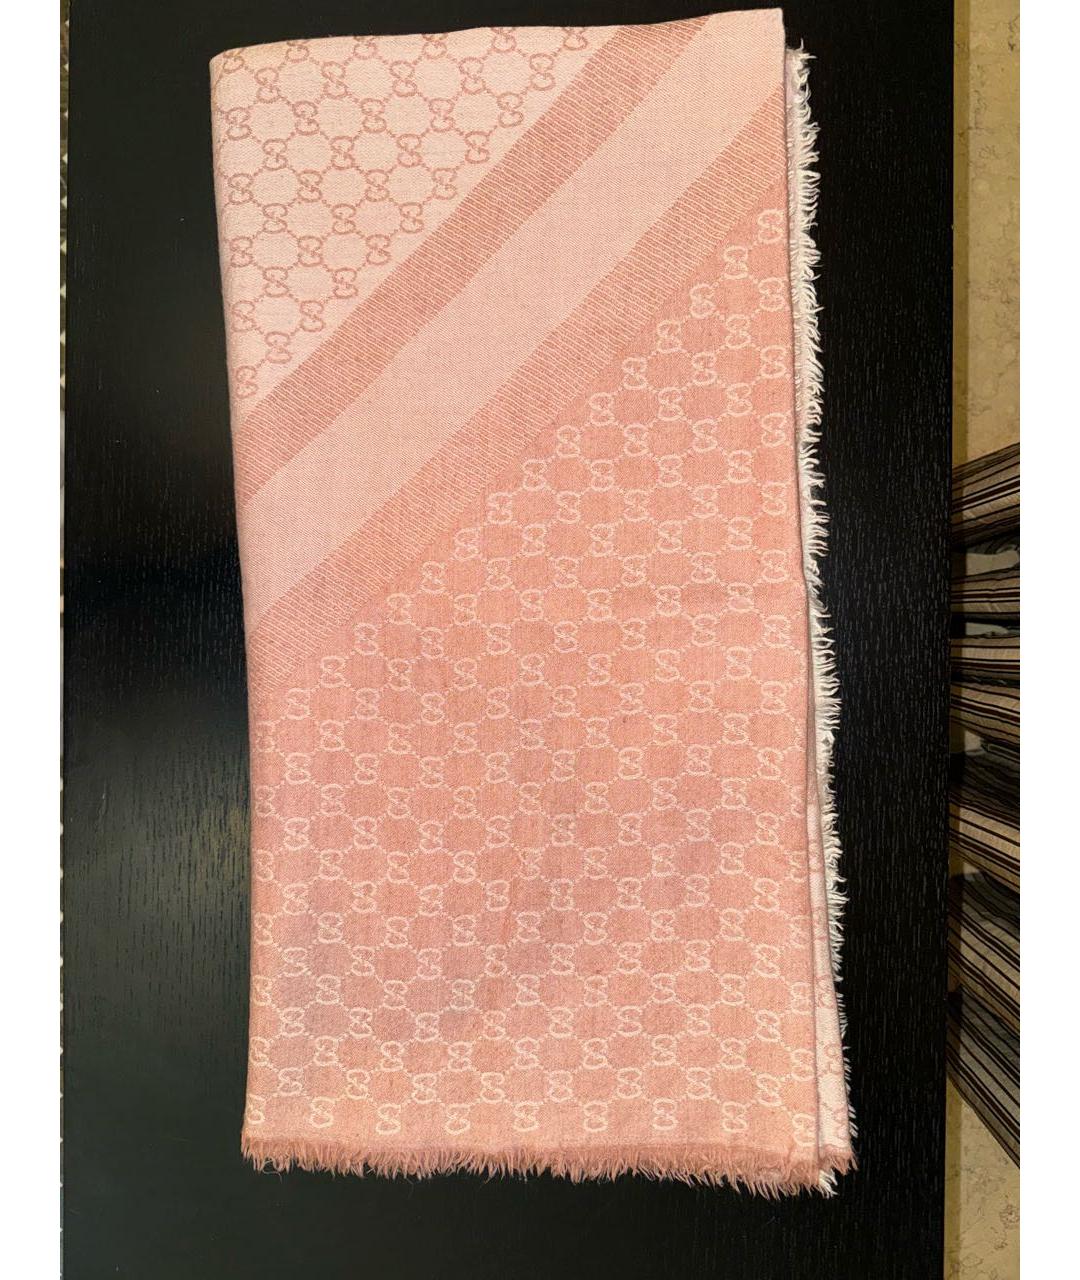 GUCCI Розовый шерстяной шарф, фото 2